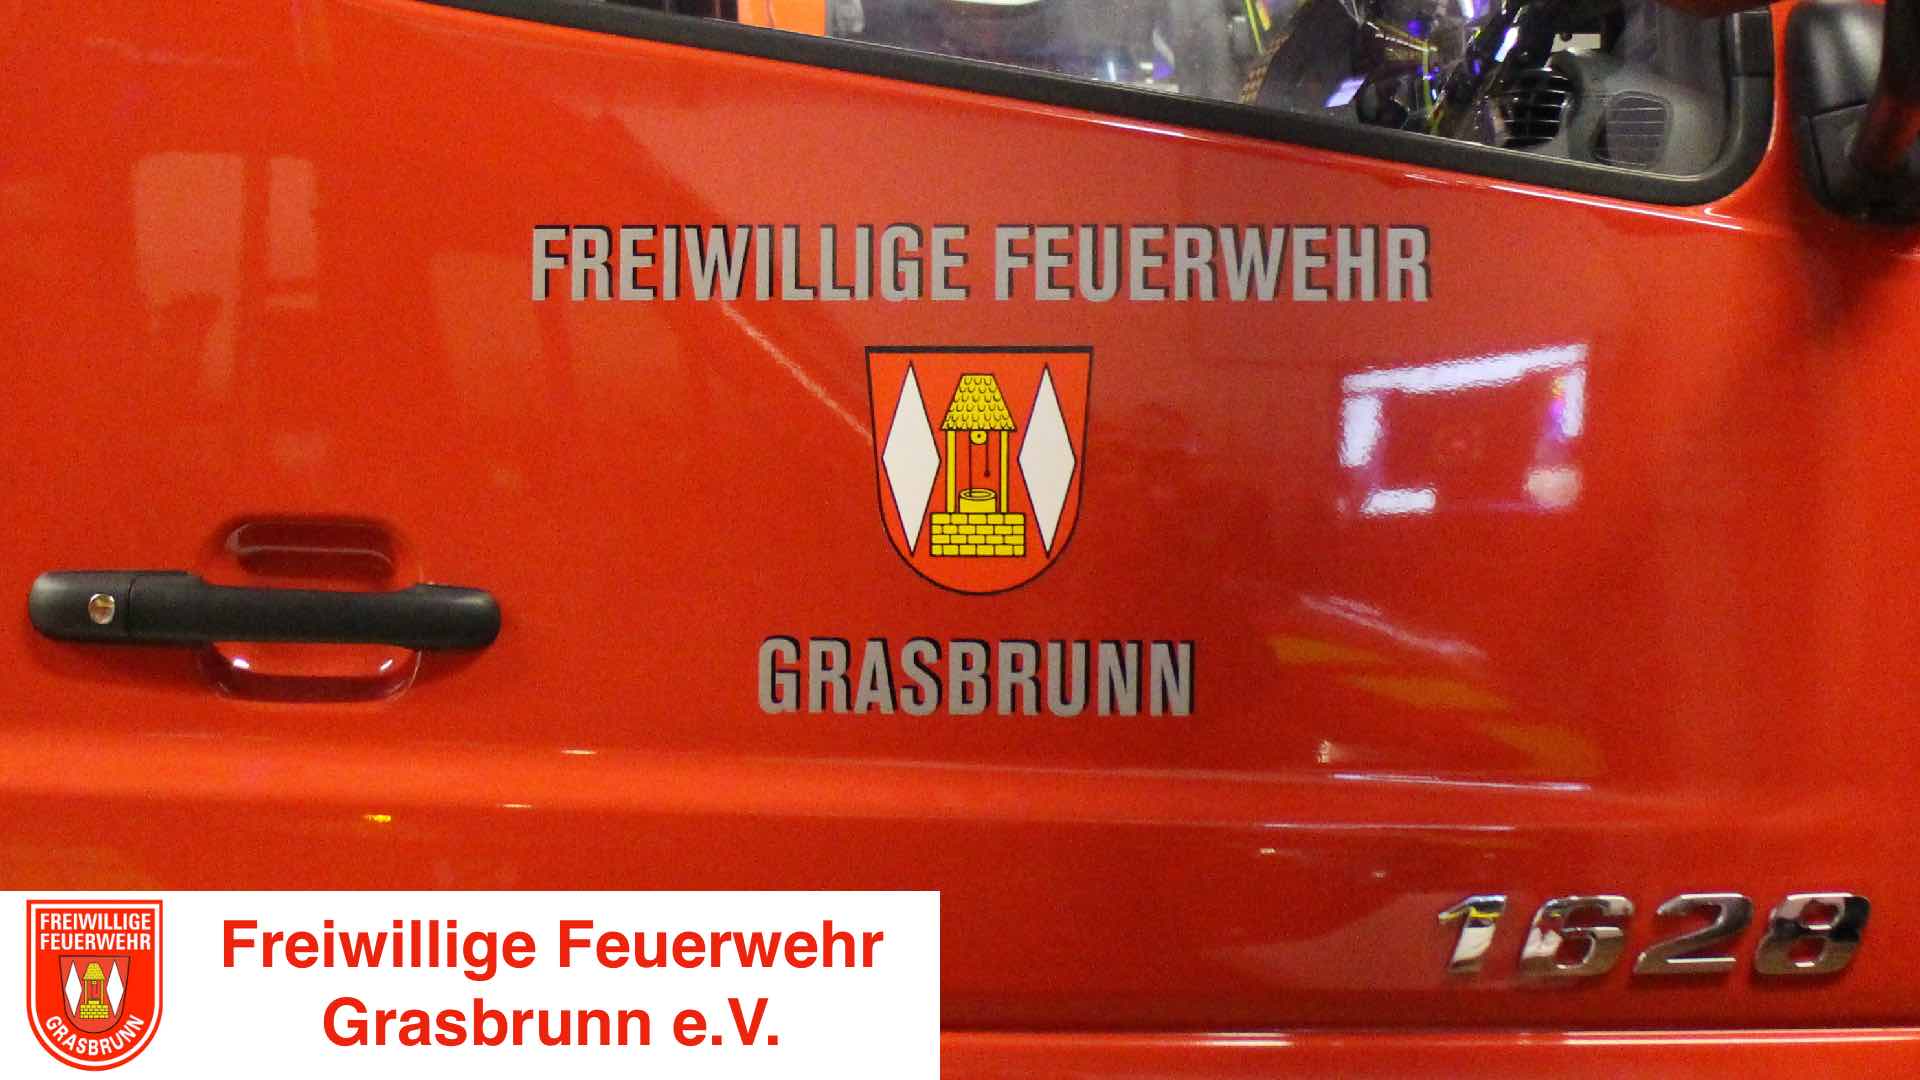 150-jähriges Gründungsfest der Freiwilligen Feuerwehr Grasbrunn Tag 3